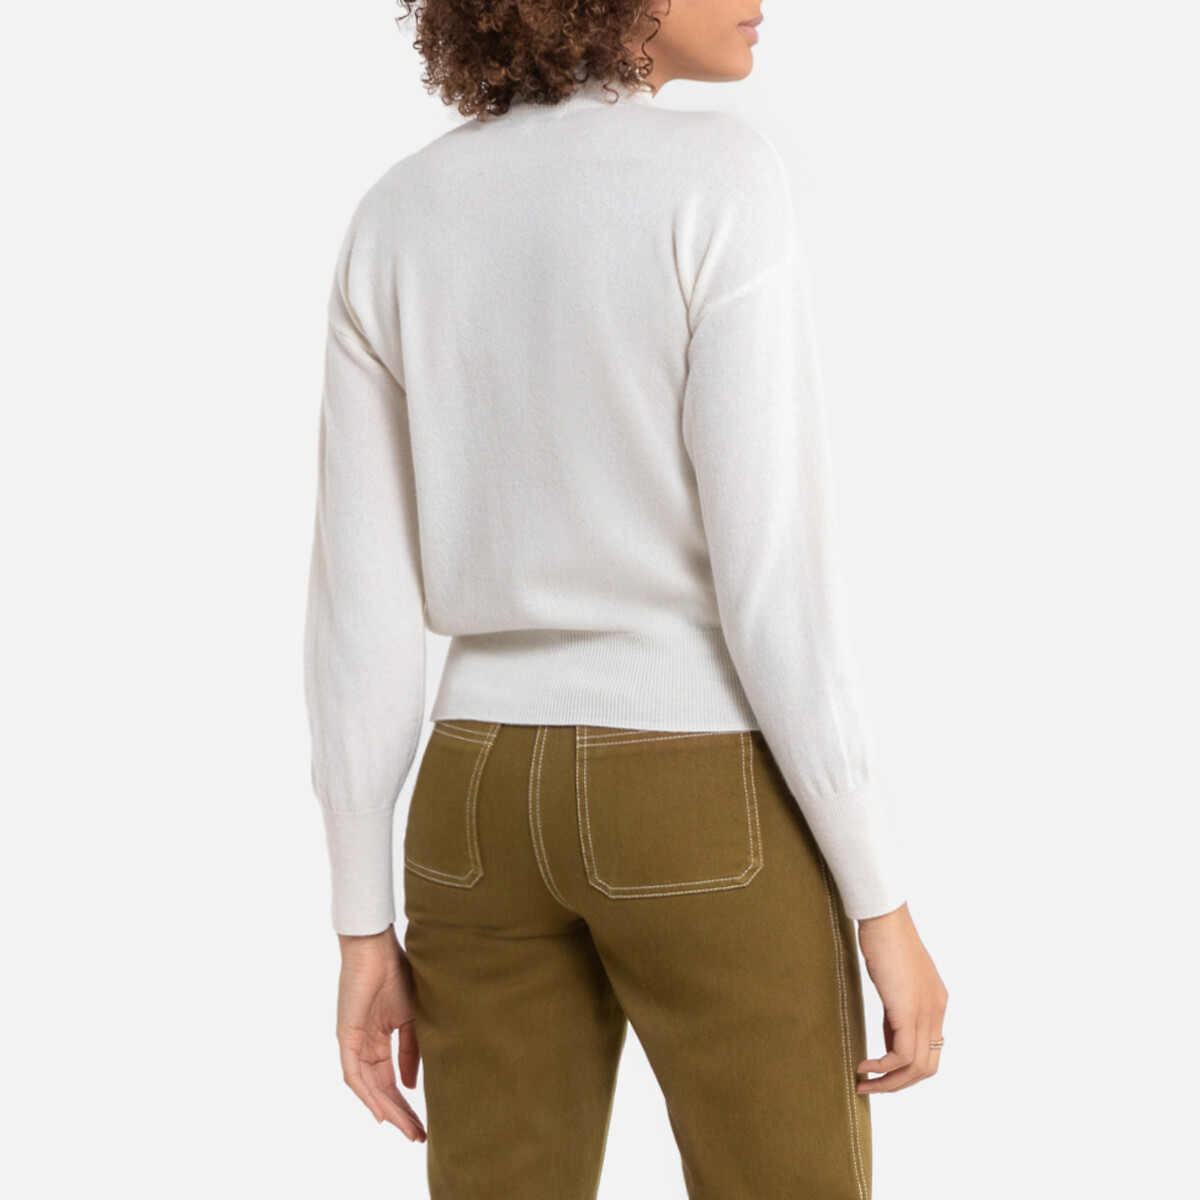 Пуловер La Redoute Из кашемира и шерсти с отворачивающимся воротником S белый, размер S - фото 4